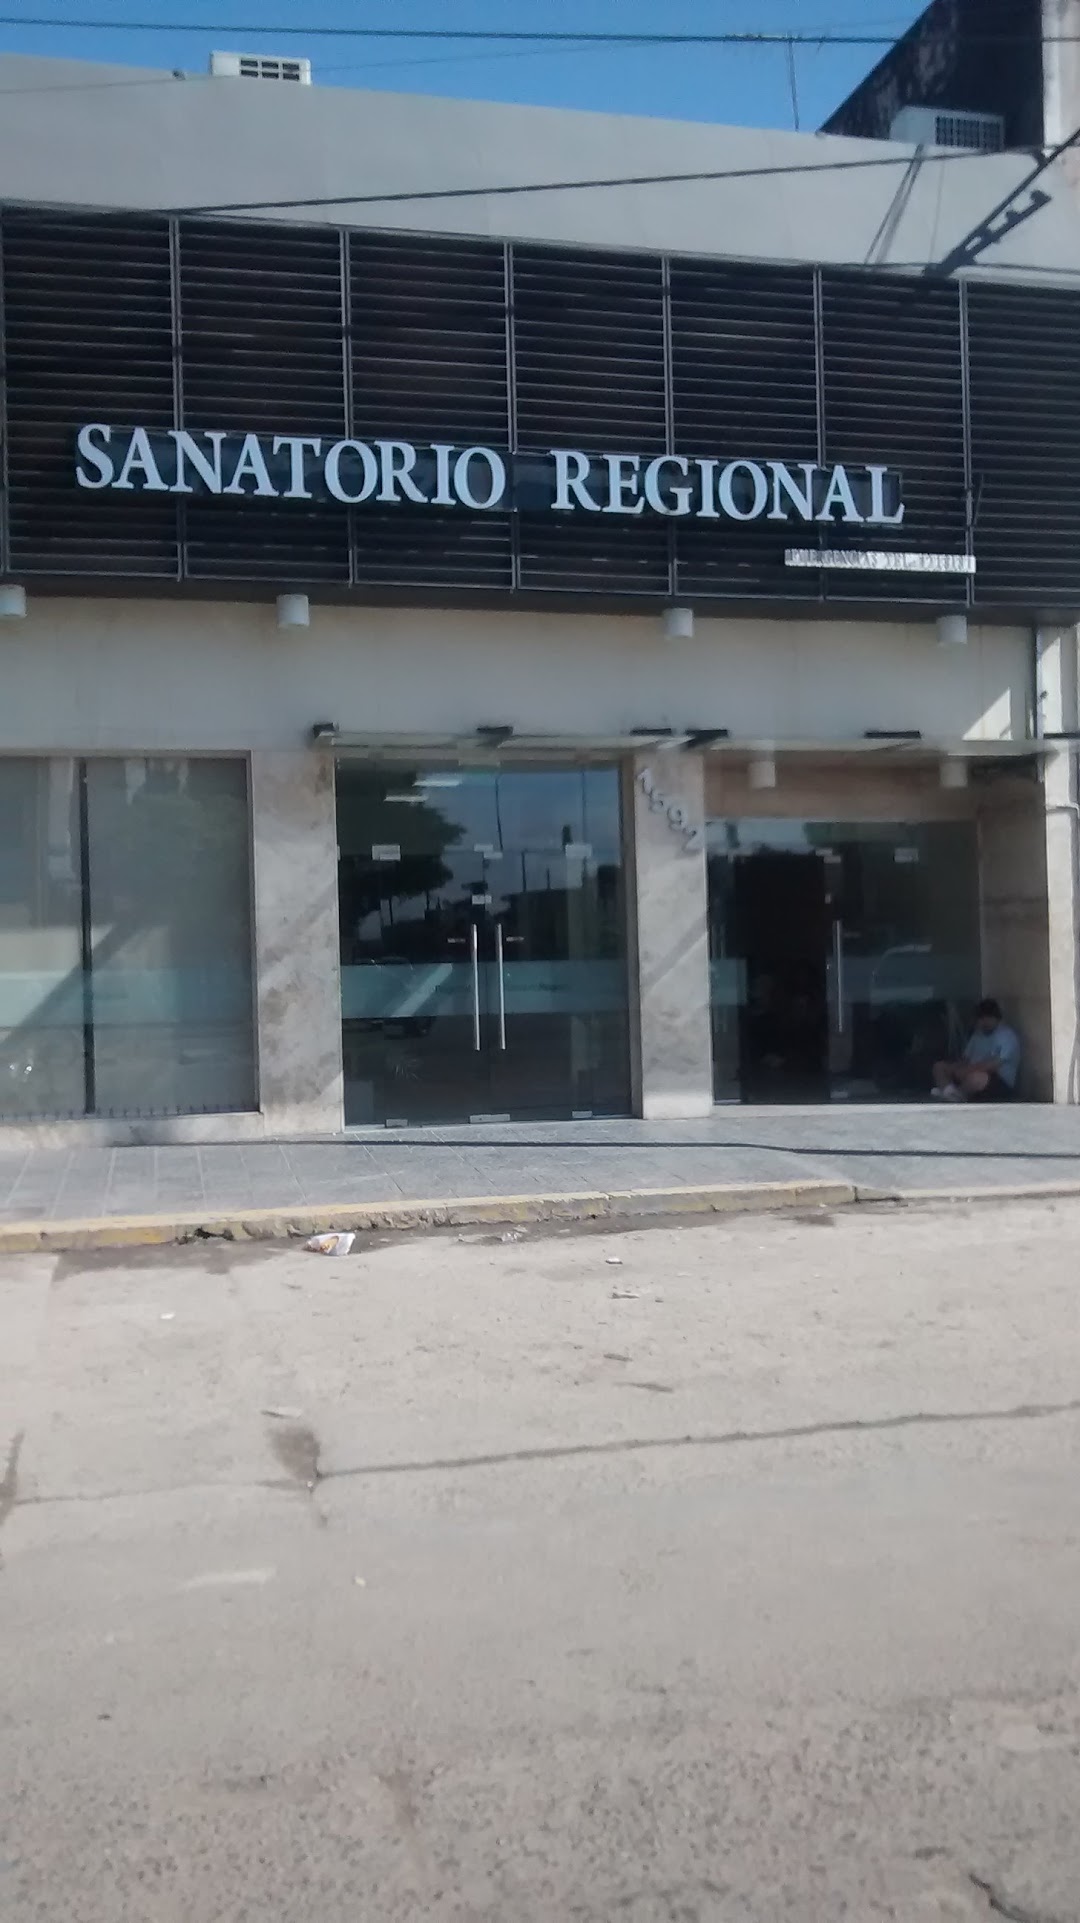 SANATORIO REGIONAL